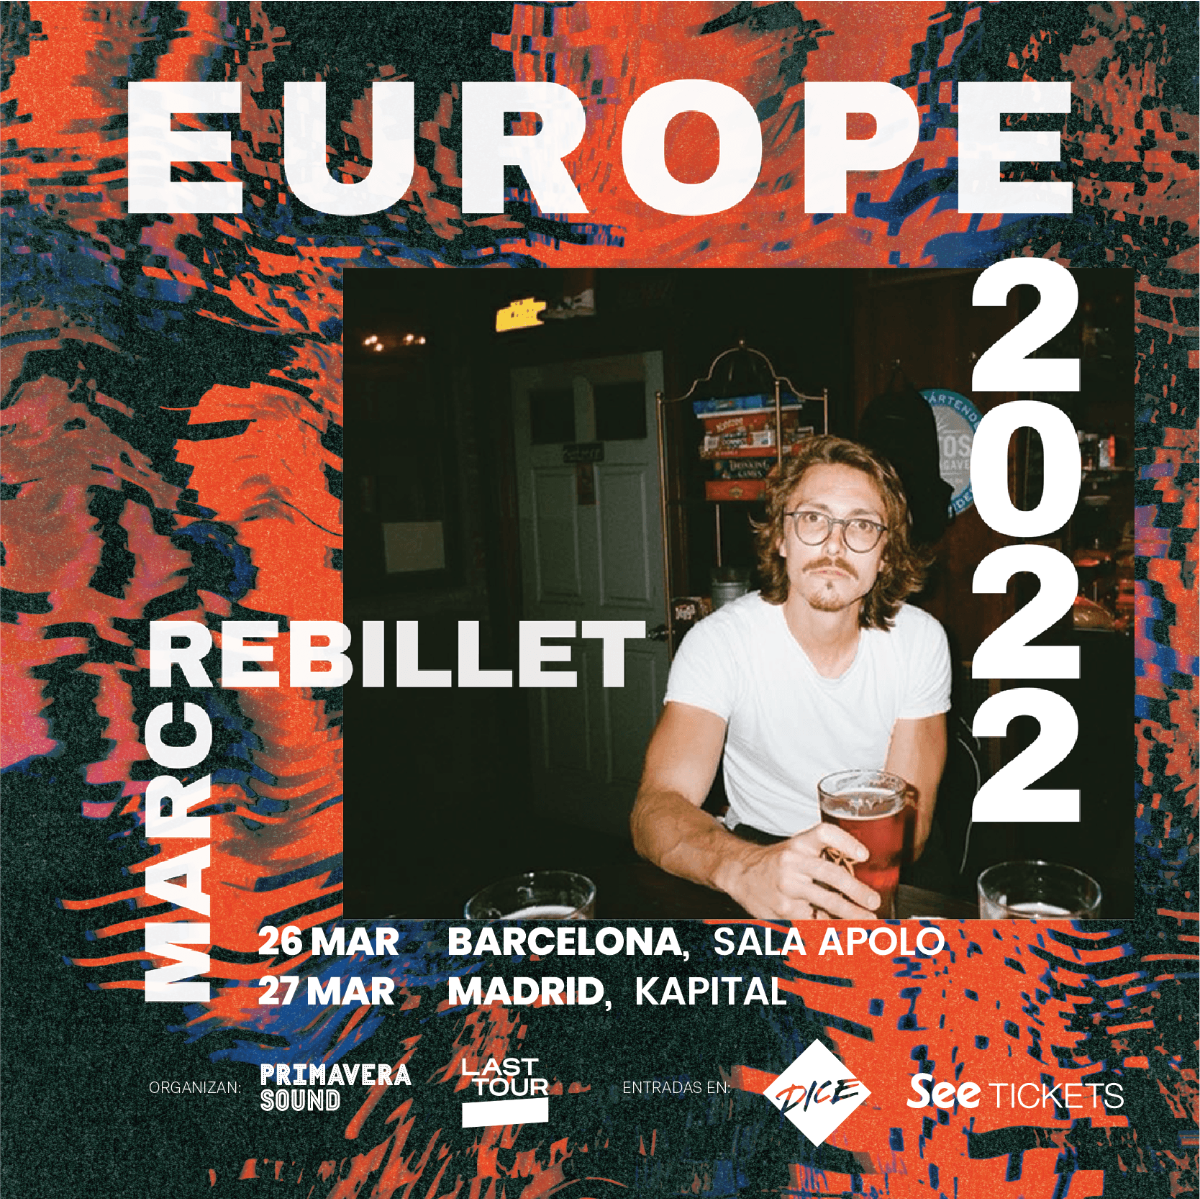 La broma funk de Marc Rebillet va muy en serio: conciertos en Barcelona y Madrid en marzo